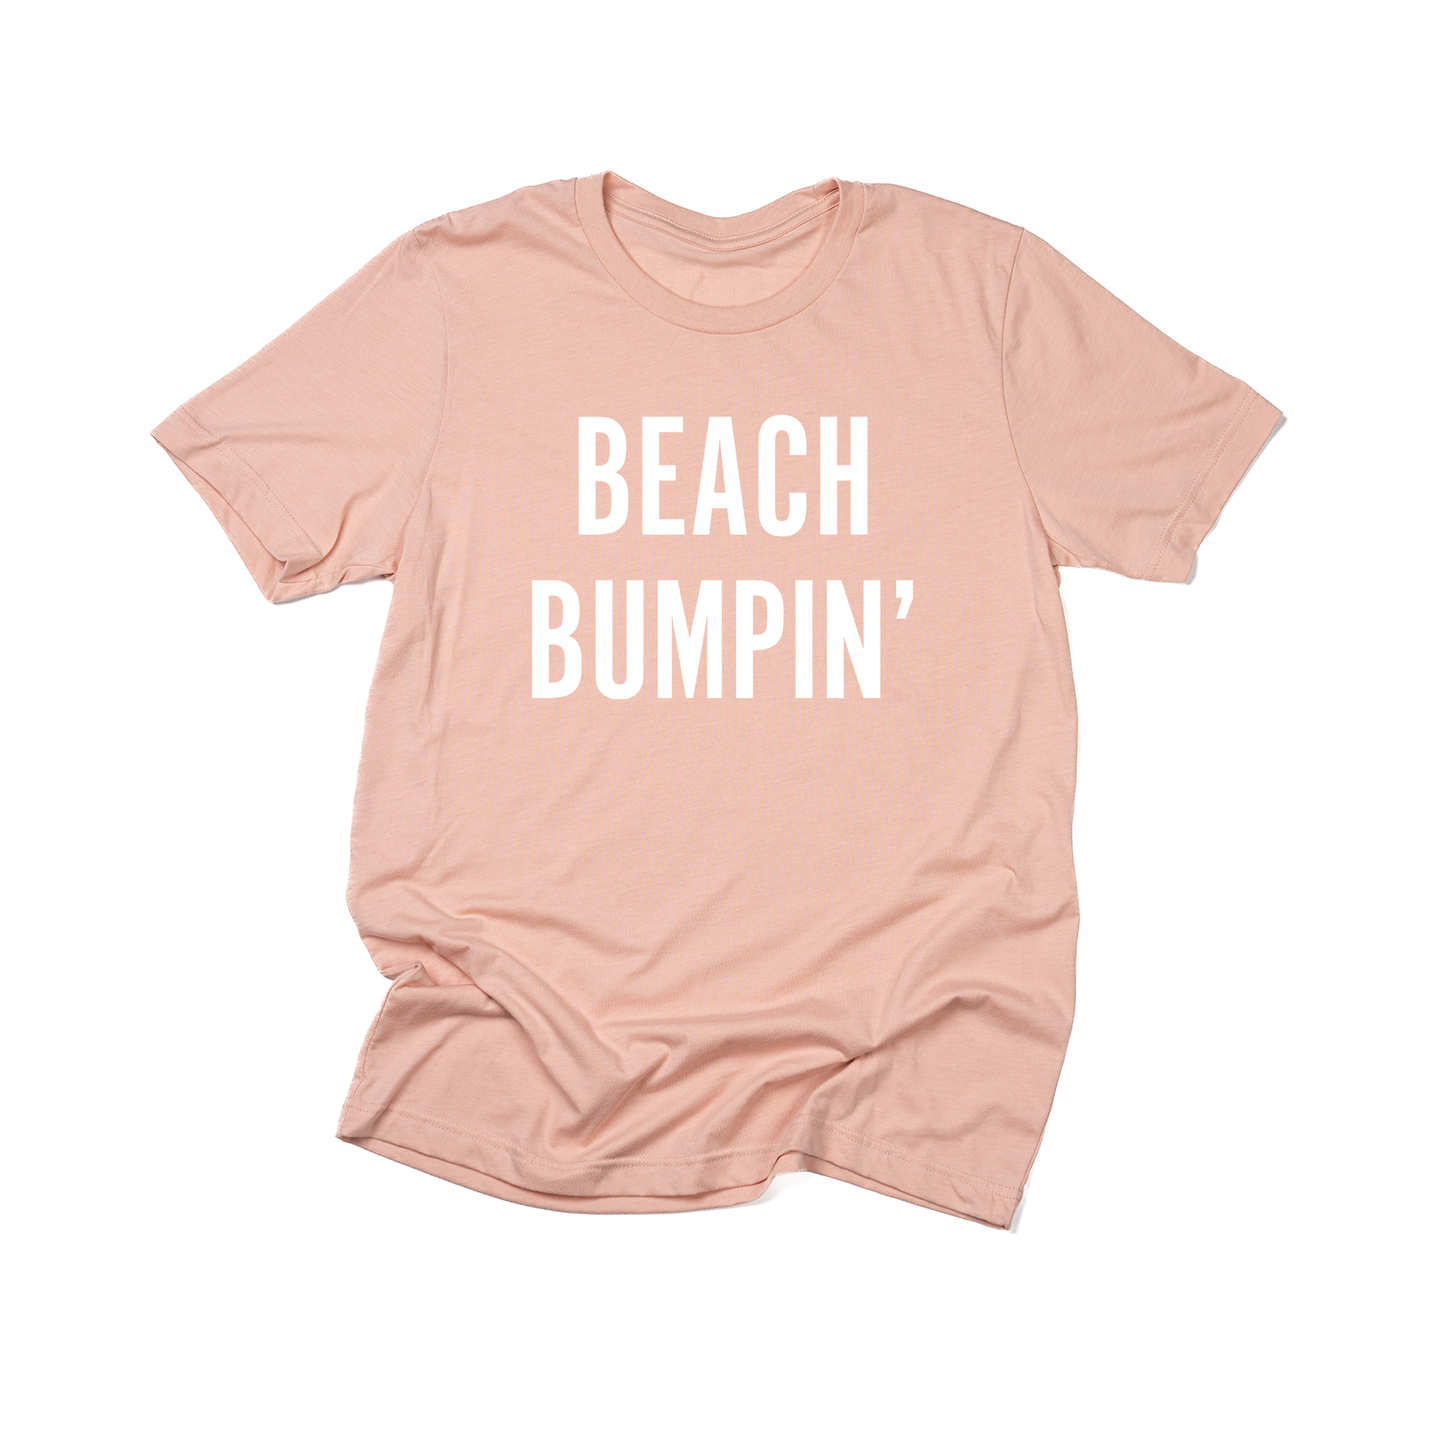 Beach Bumpin' (White) - Tee (Peach)